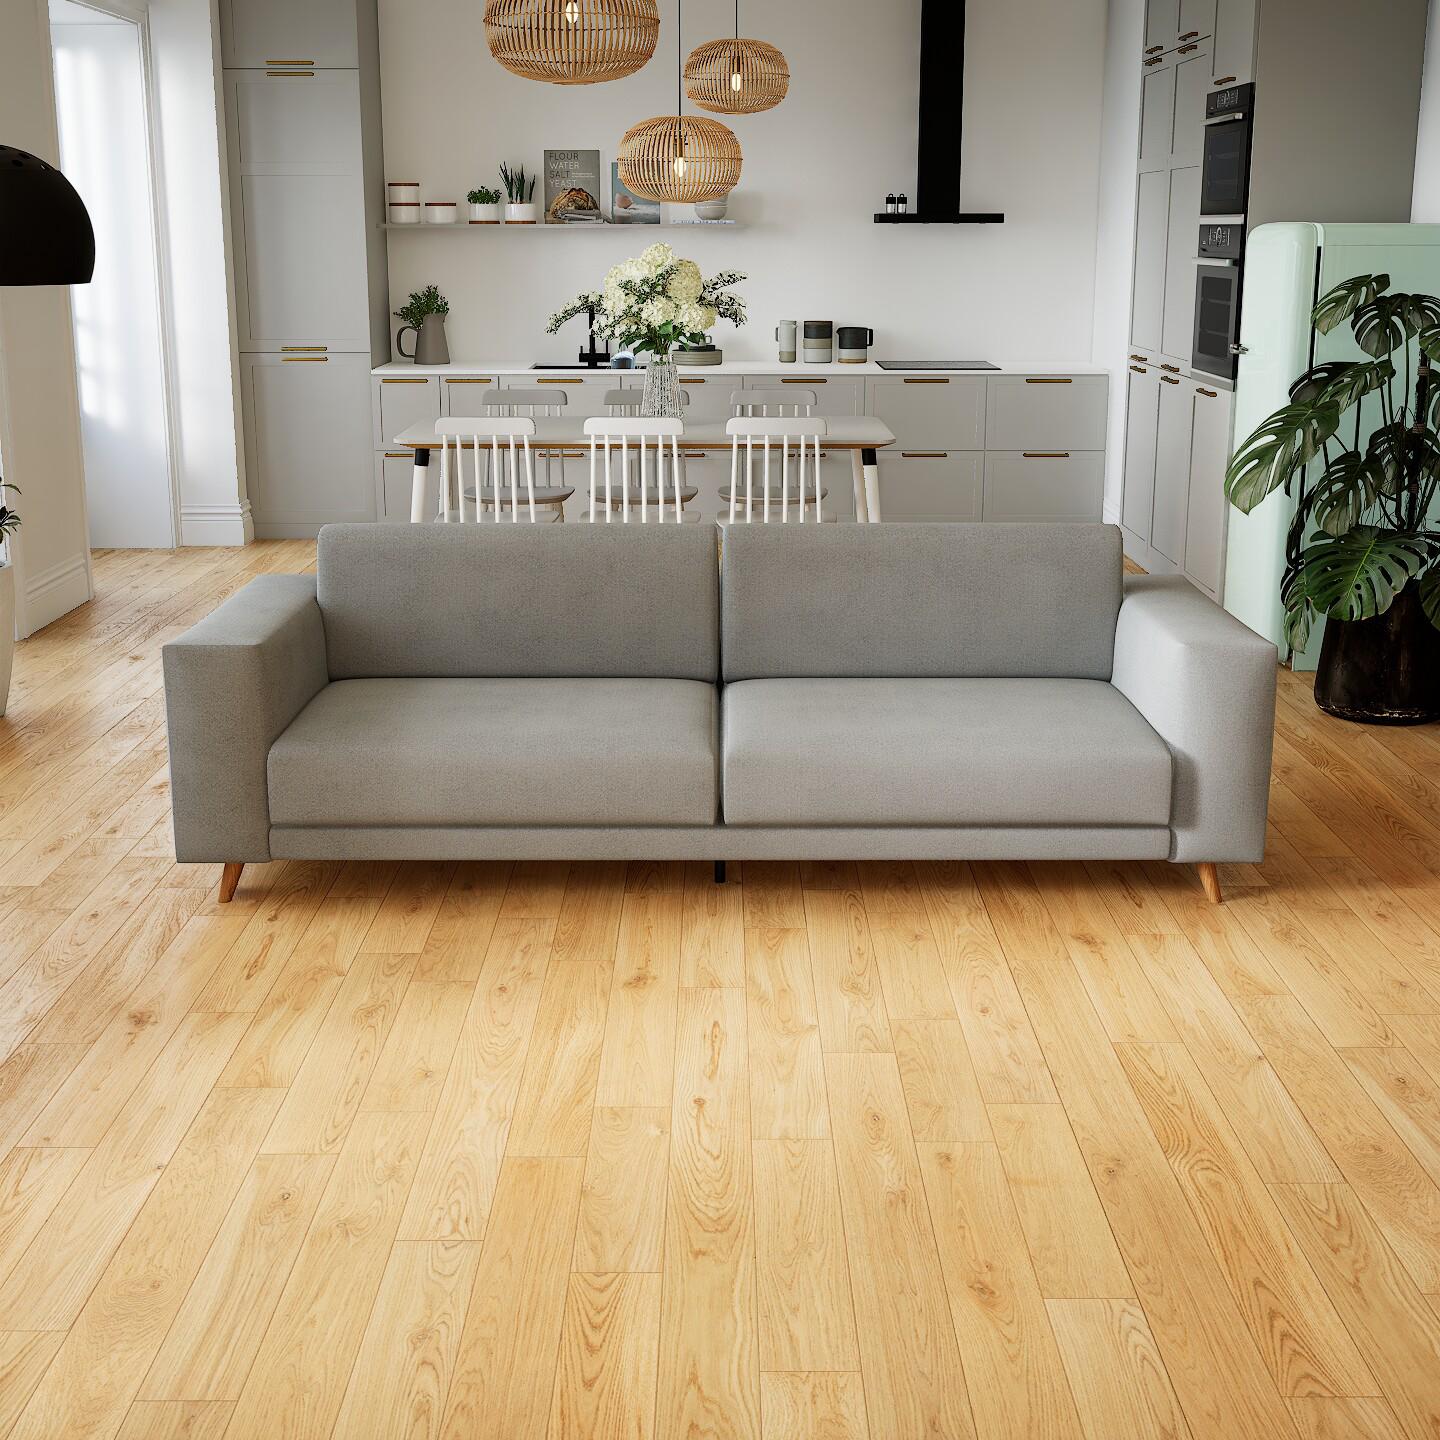 Sofa Sandgrau - Moderne Designer-Couch: Hochwertige Qualität, einzigartiges Design - 248 x 75 x 98 cm, Komplett anpassbar von MYCS